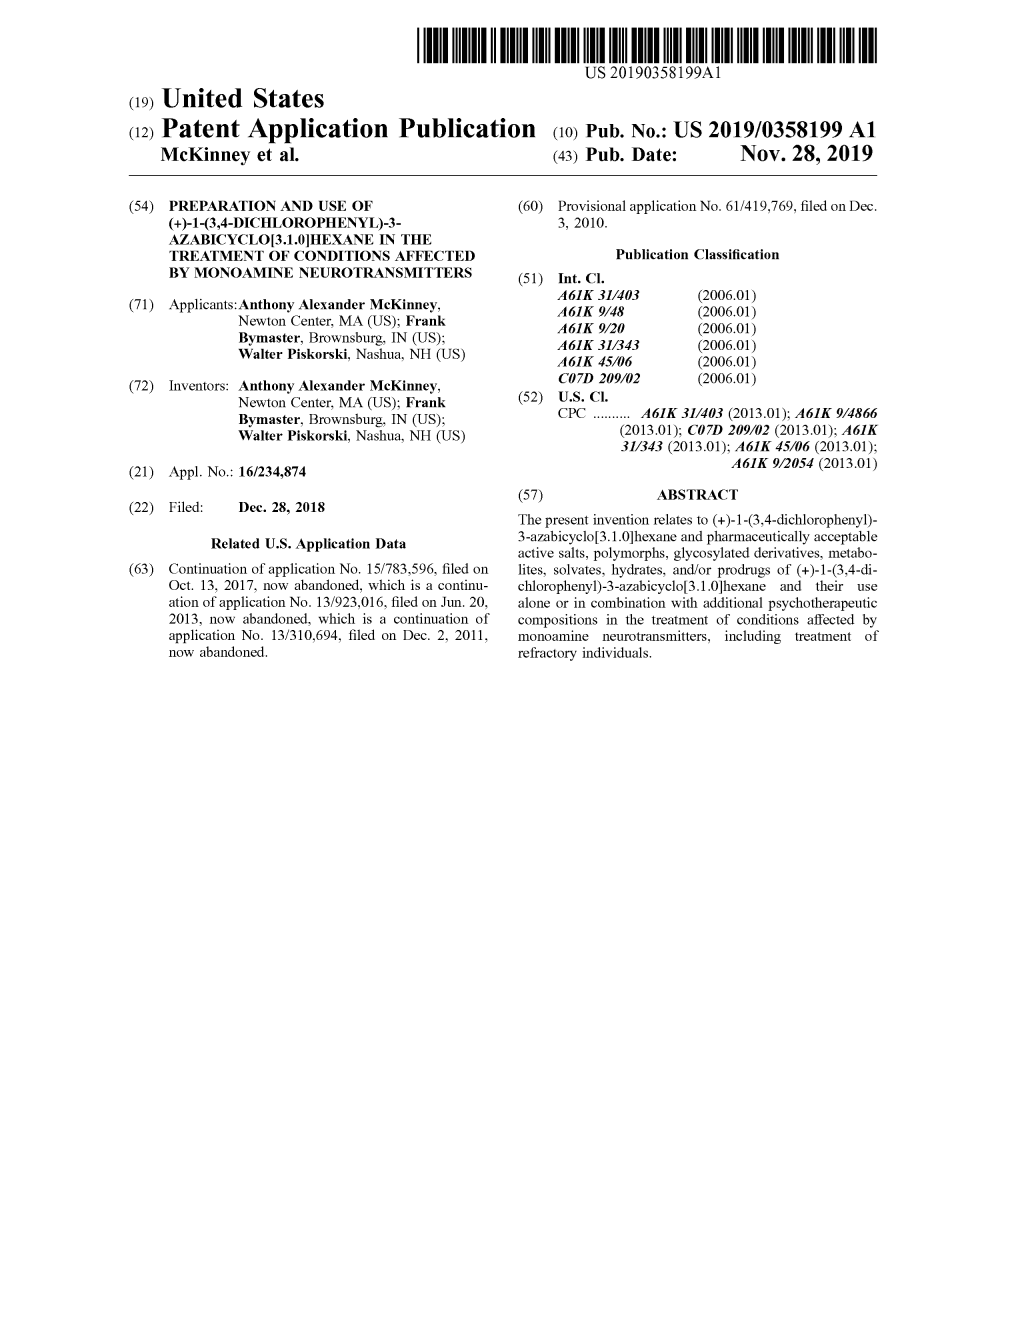 ( 12 ) Patent Application Publication ( 10 ) Pub . No .: US 2019/0358199 A1